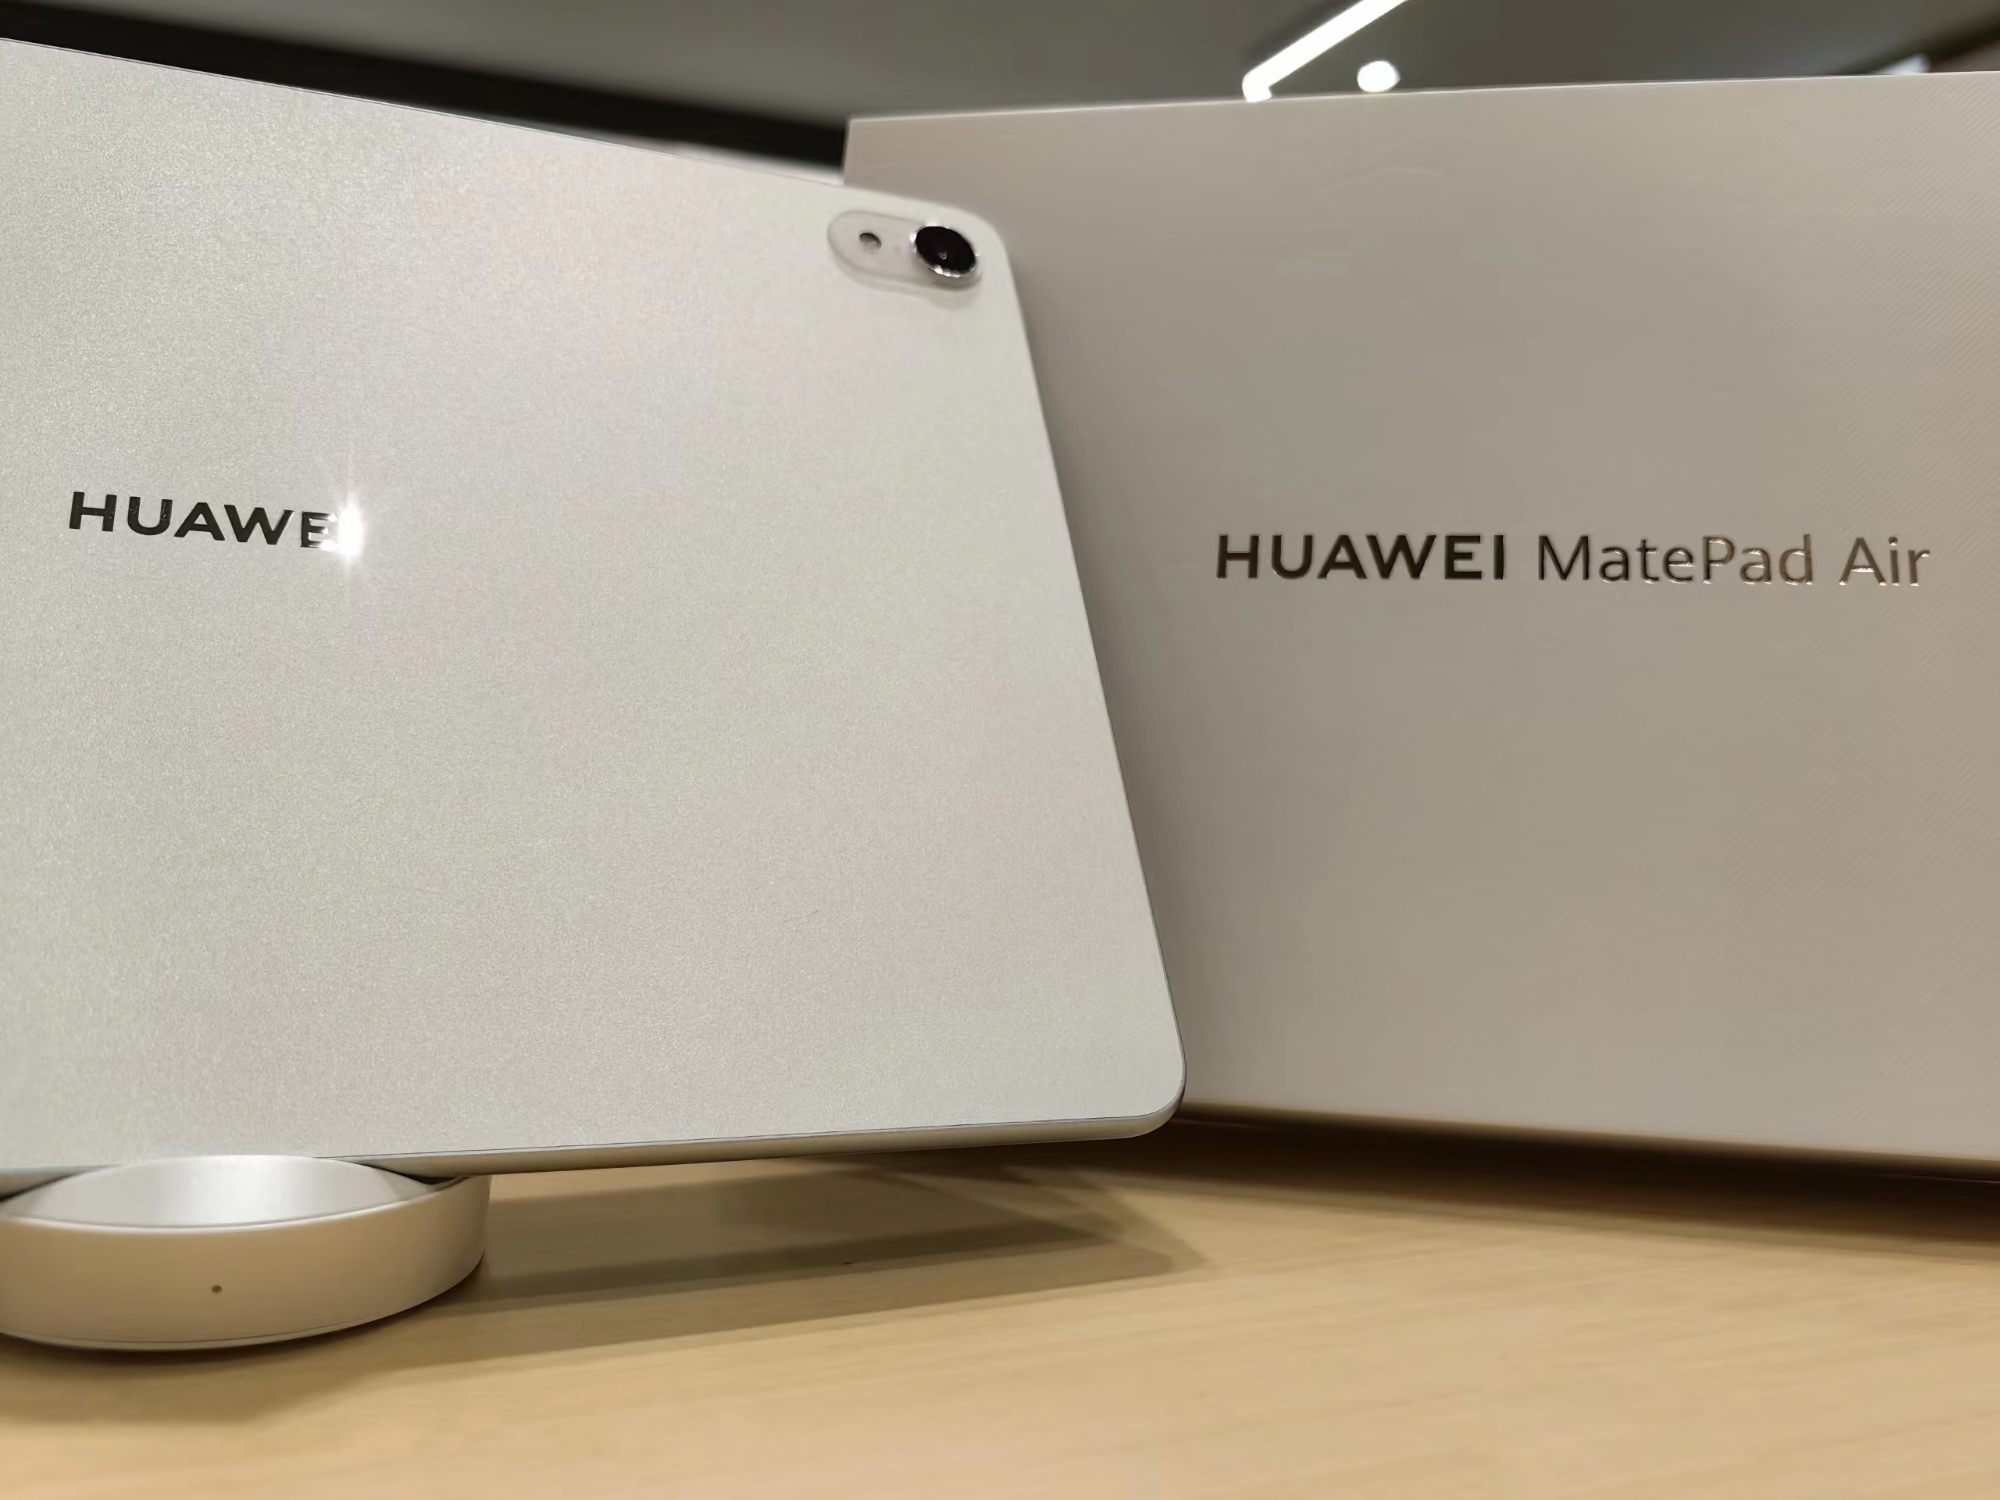 Écran 144 Hz, puce Snapdragon 888 et appareil photo principal avec flash LED : les spécifications et les photos du Huawei MatePad Air ont fait surface en ligne.